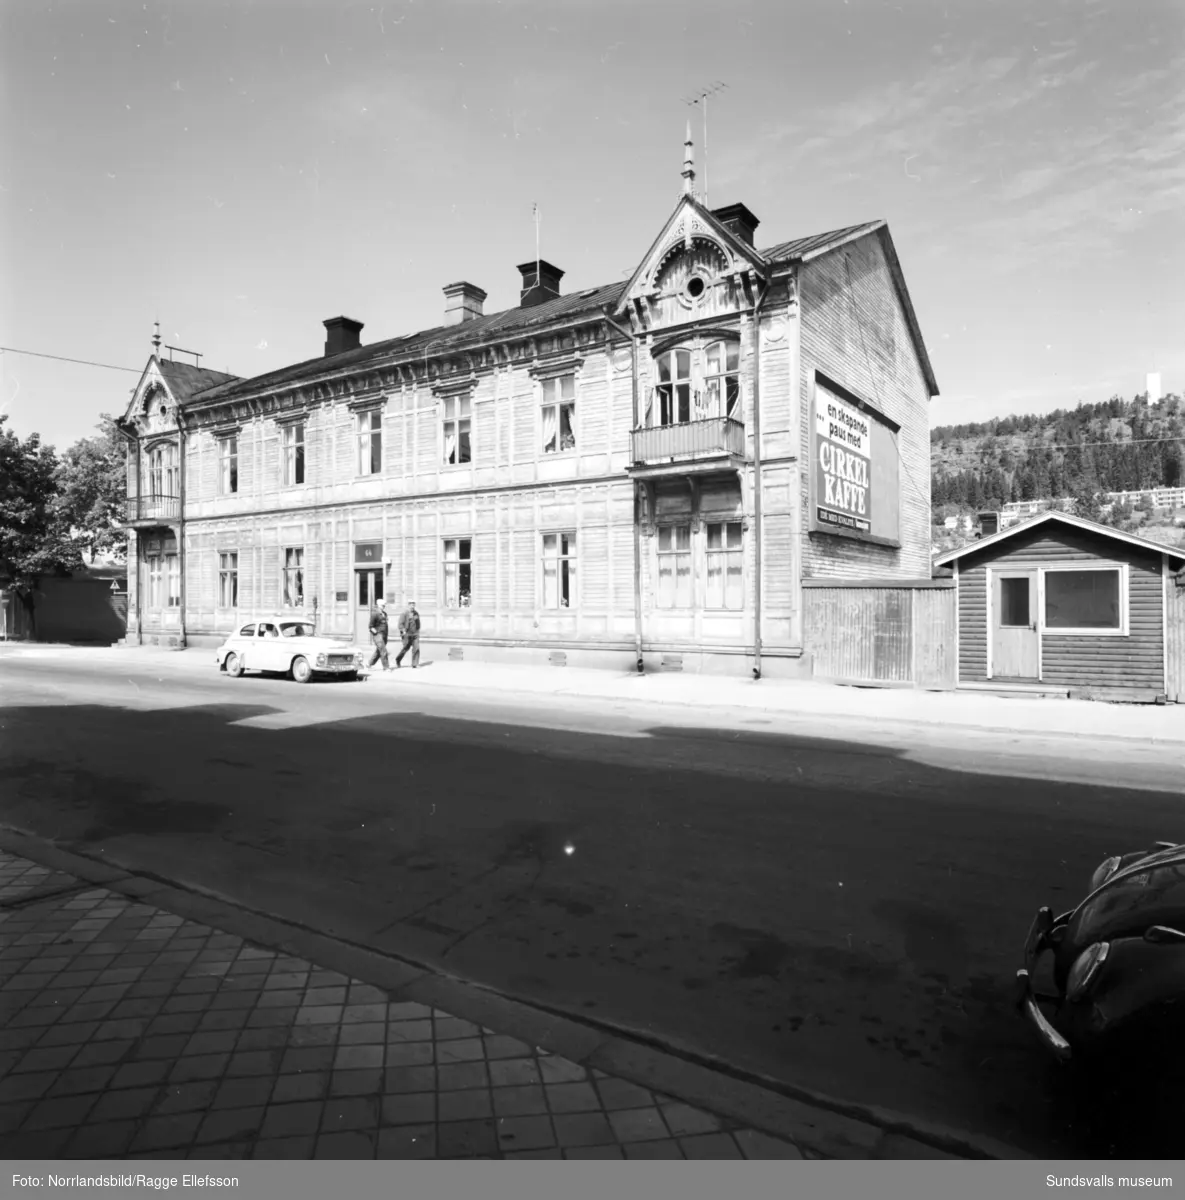 Gamla och nya hus i Sundsvall. Det byggs och rivs för fullt på Storgatan 52-58.